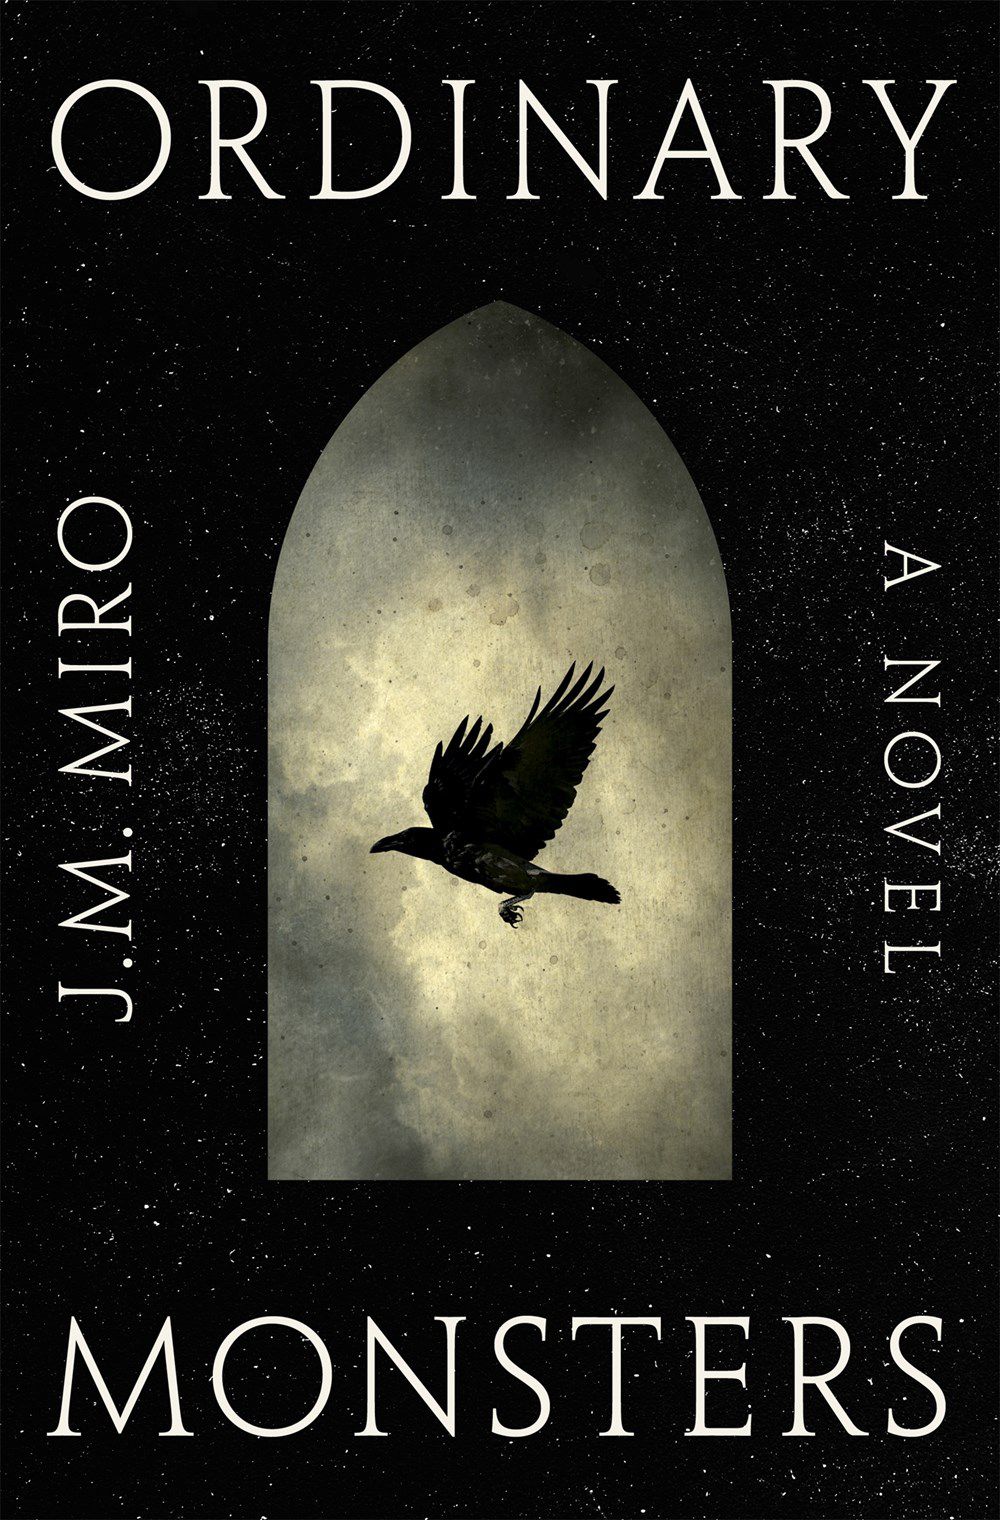 تصویر روی جلد برای هیولاهای معمولی توسط JM Miro، پرنده سیاهی که در پس زمینه ابرها و آسمان شب پرواز می کند.